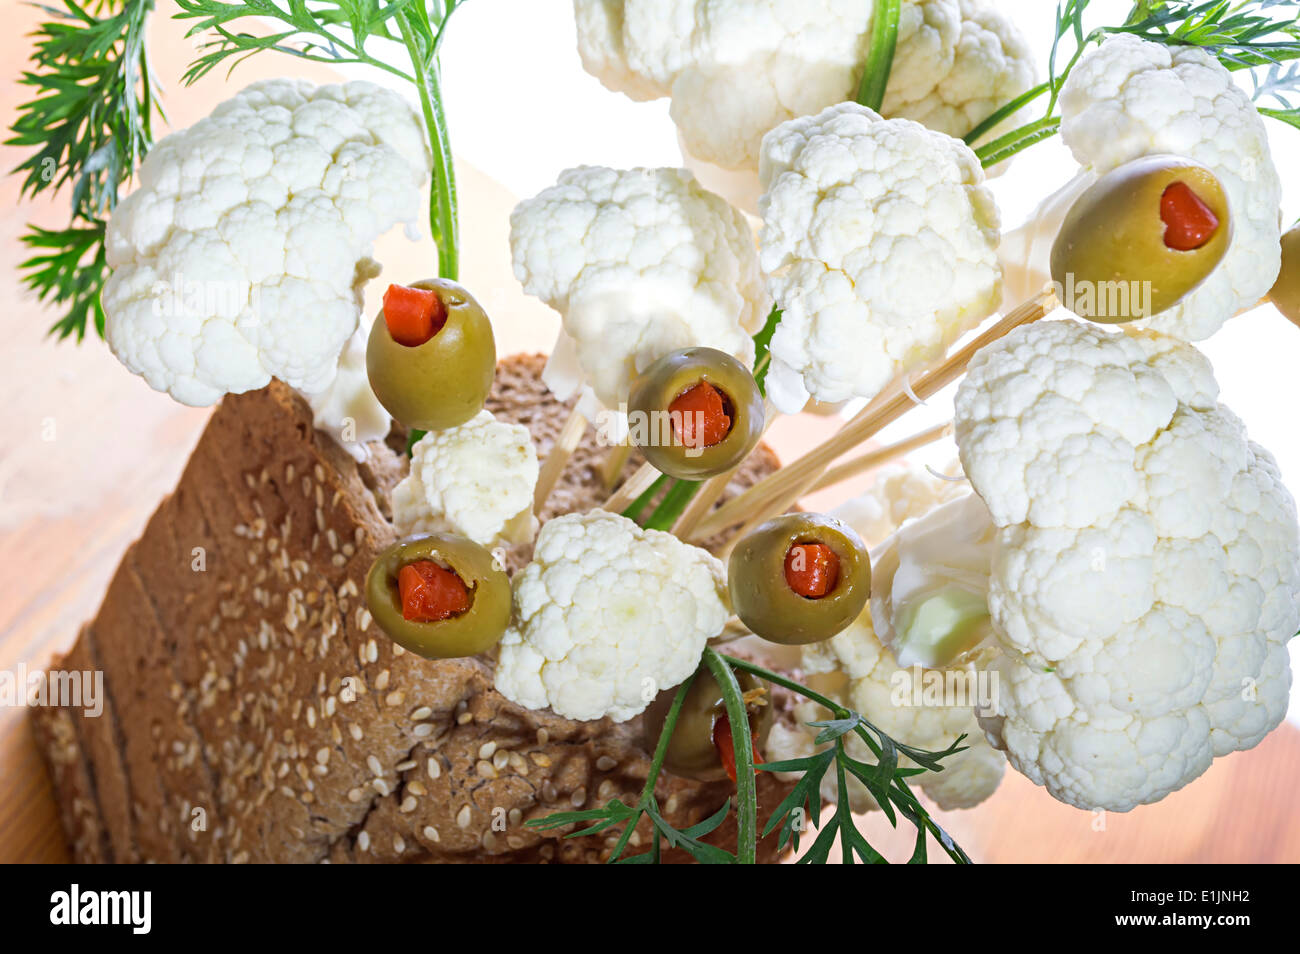 Un bouquet d'olives et le chou-fleur dans un panier à pain avec une faible profondeur de champ. Banque D'Images